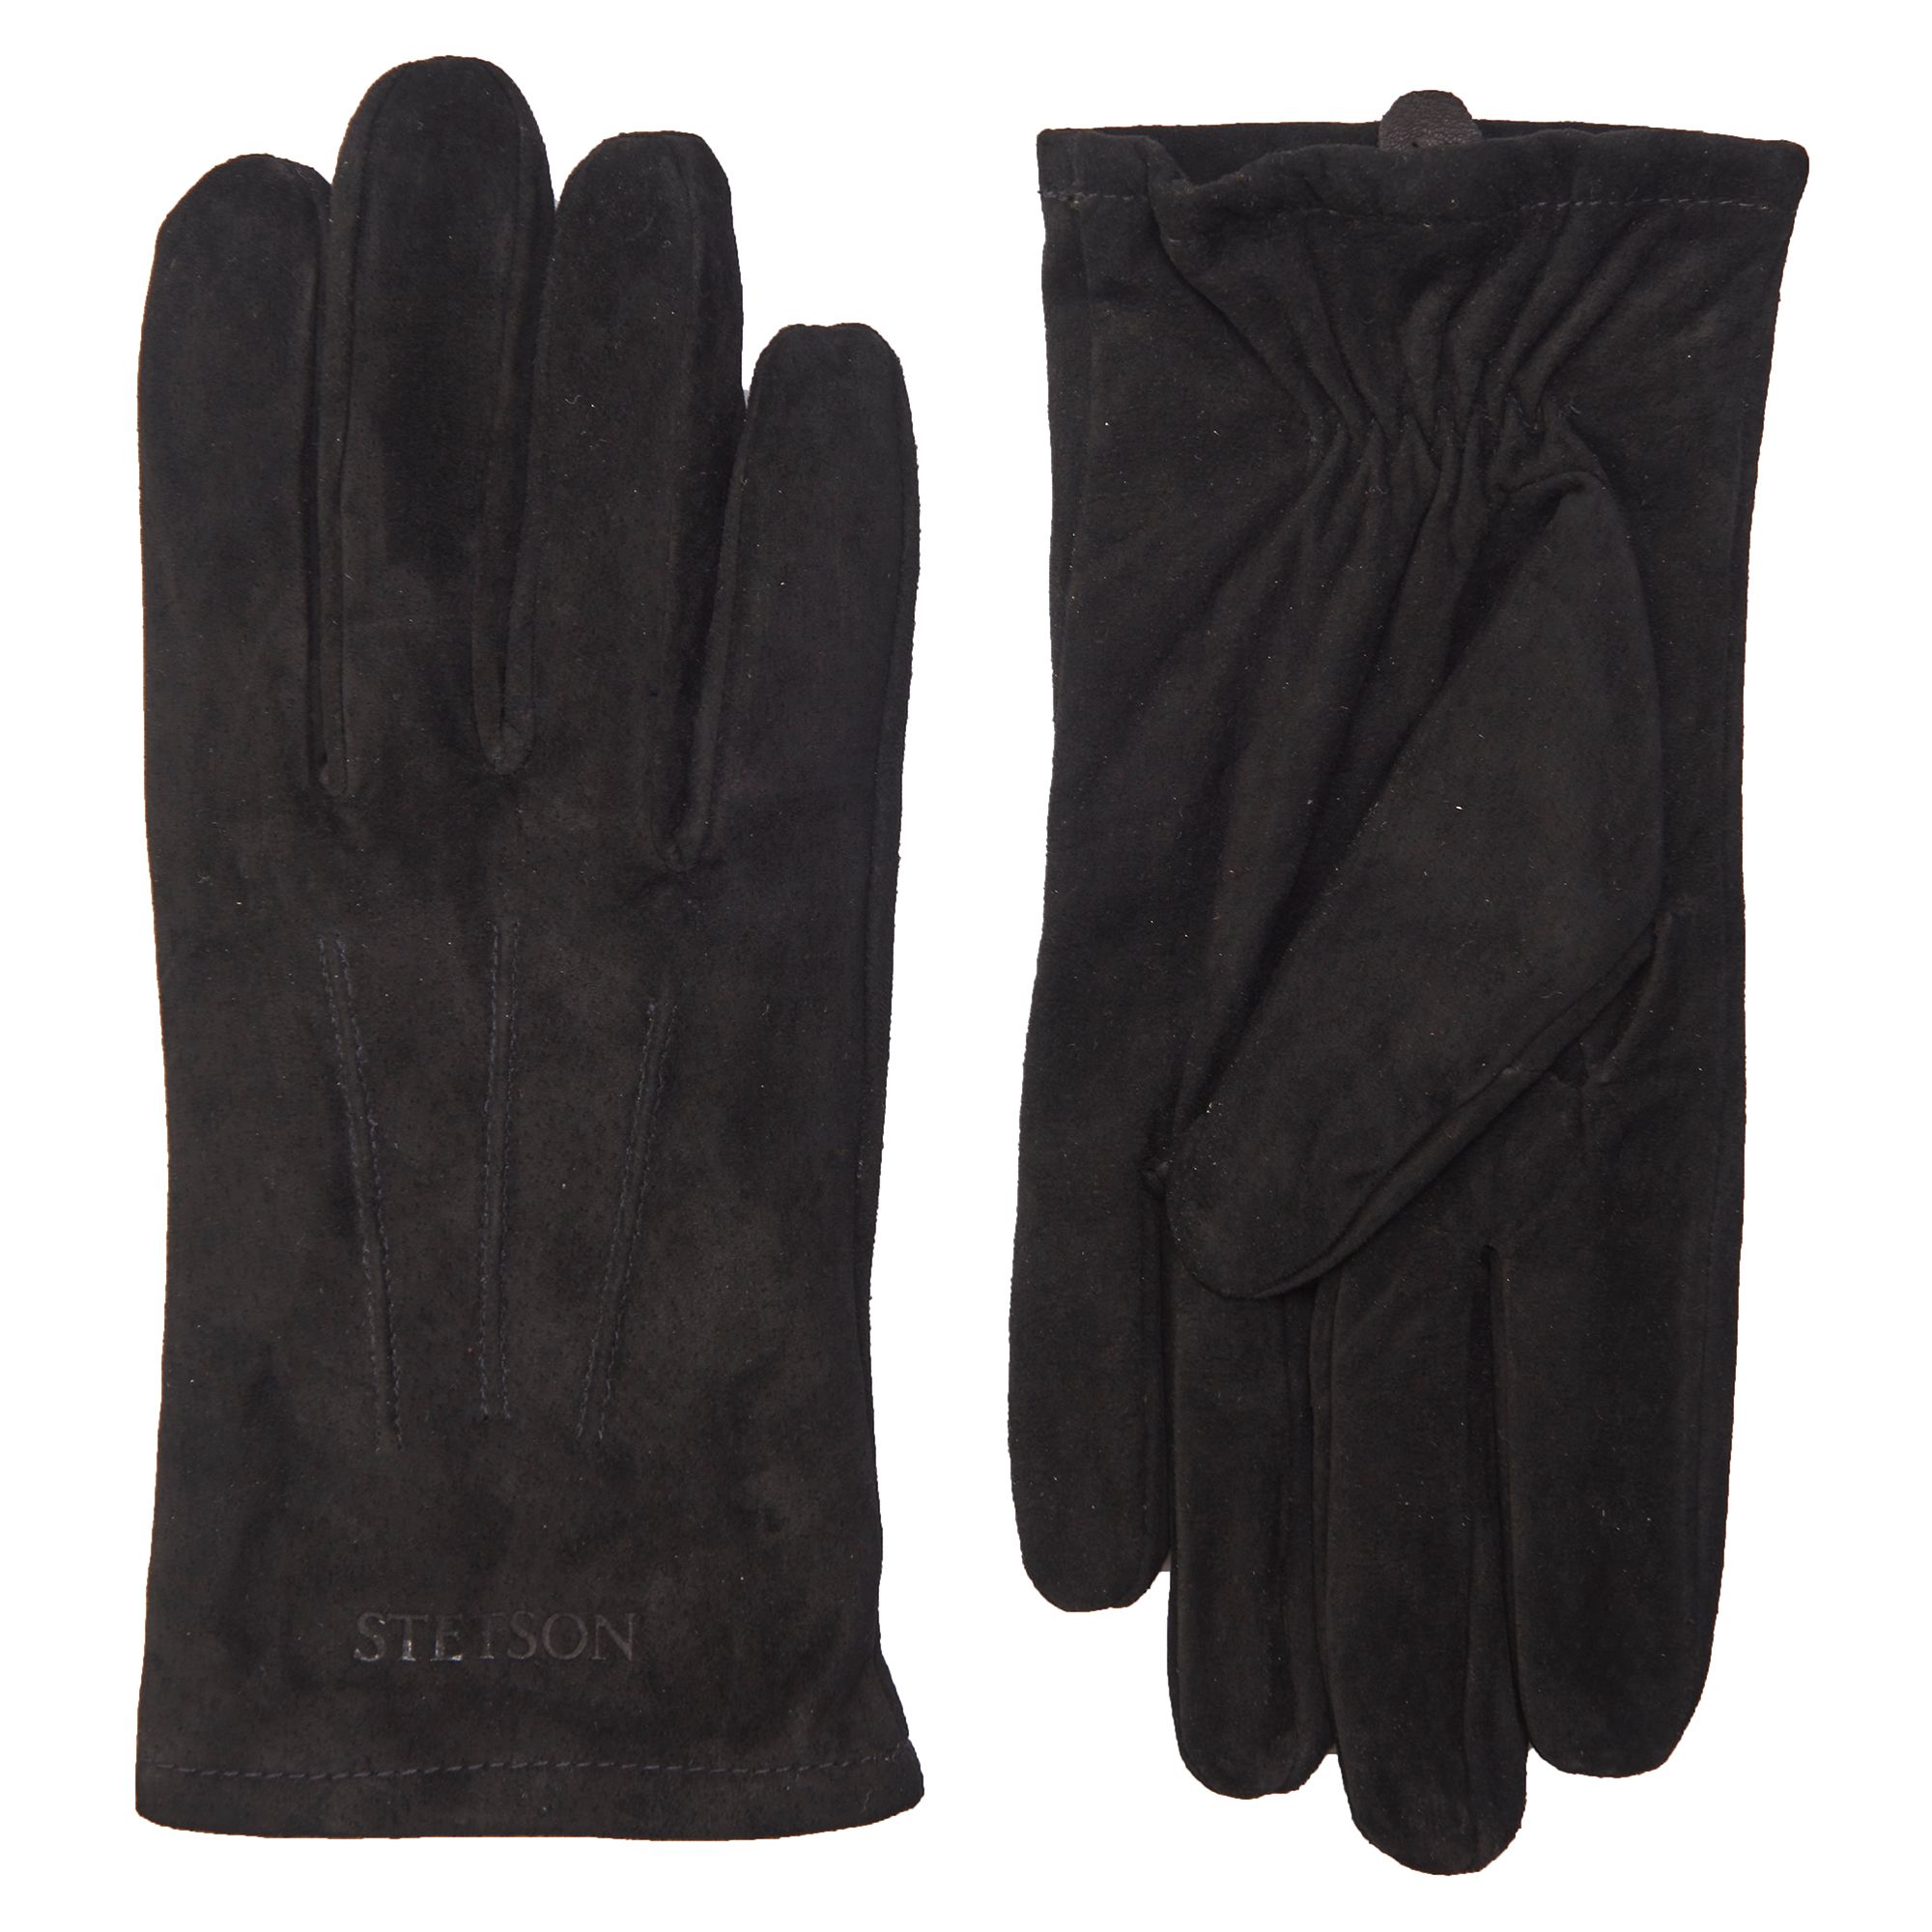 Stetson - Handschoenen Zwart 078628-001-L